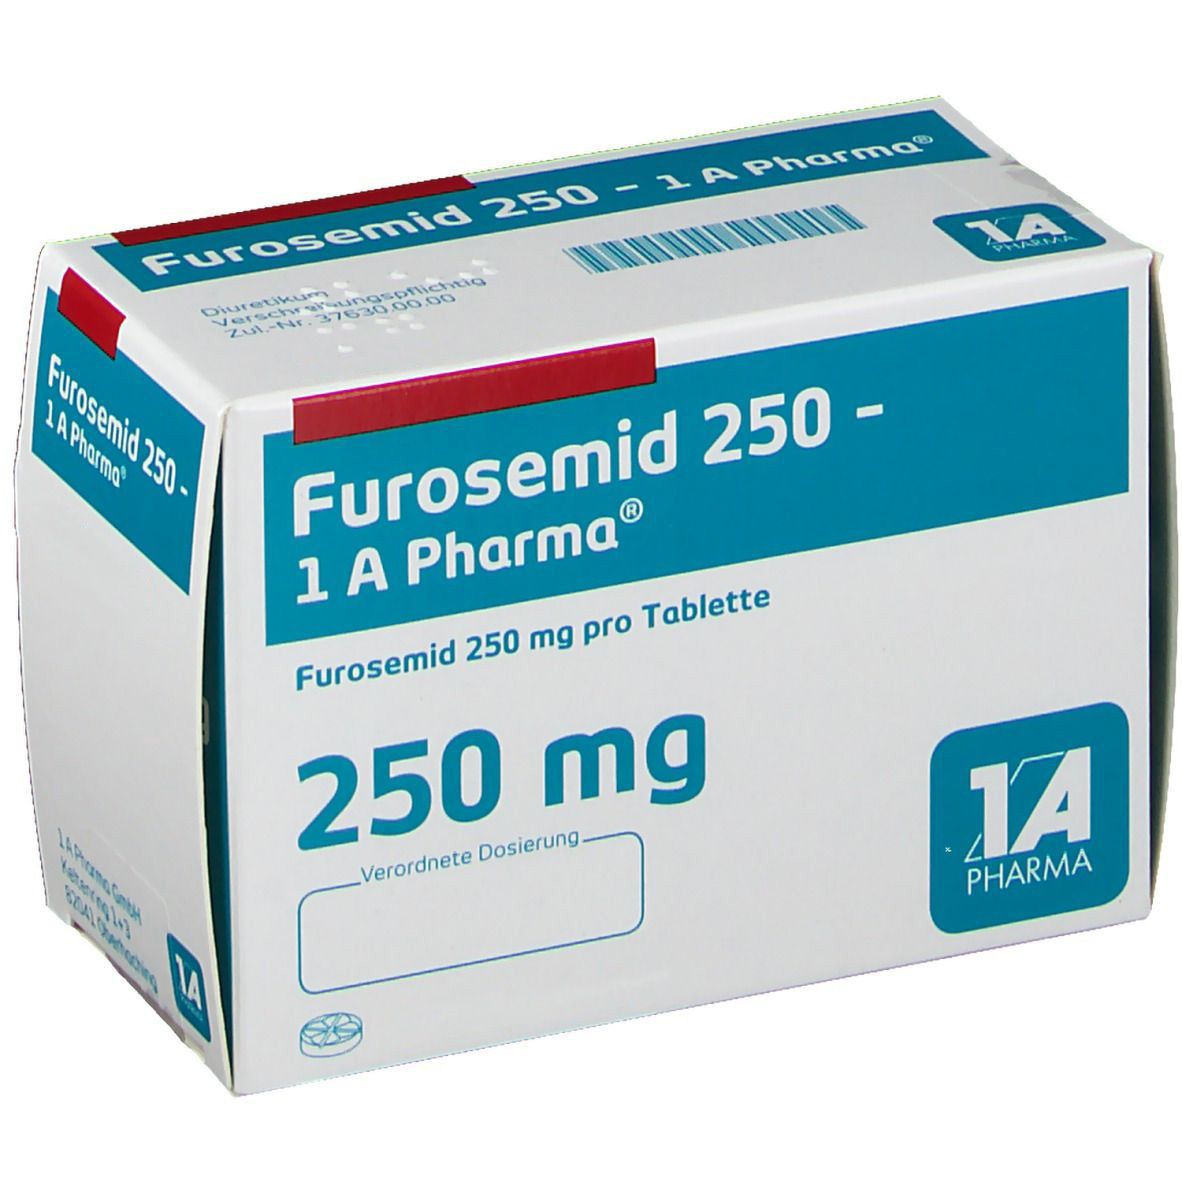 Furosemid 250 - 1 A Pharma®